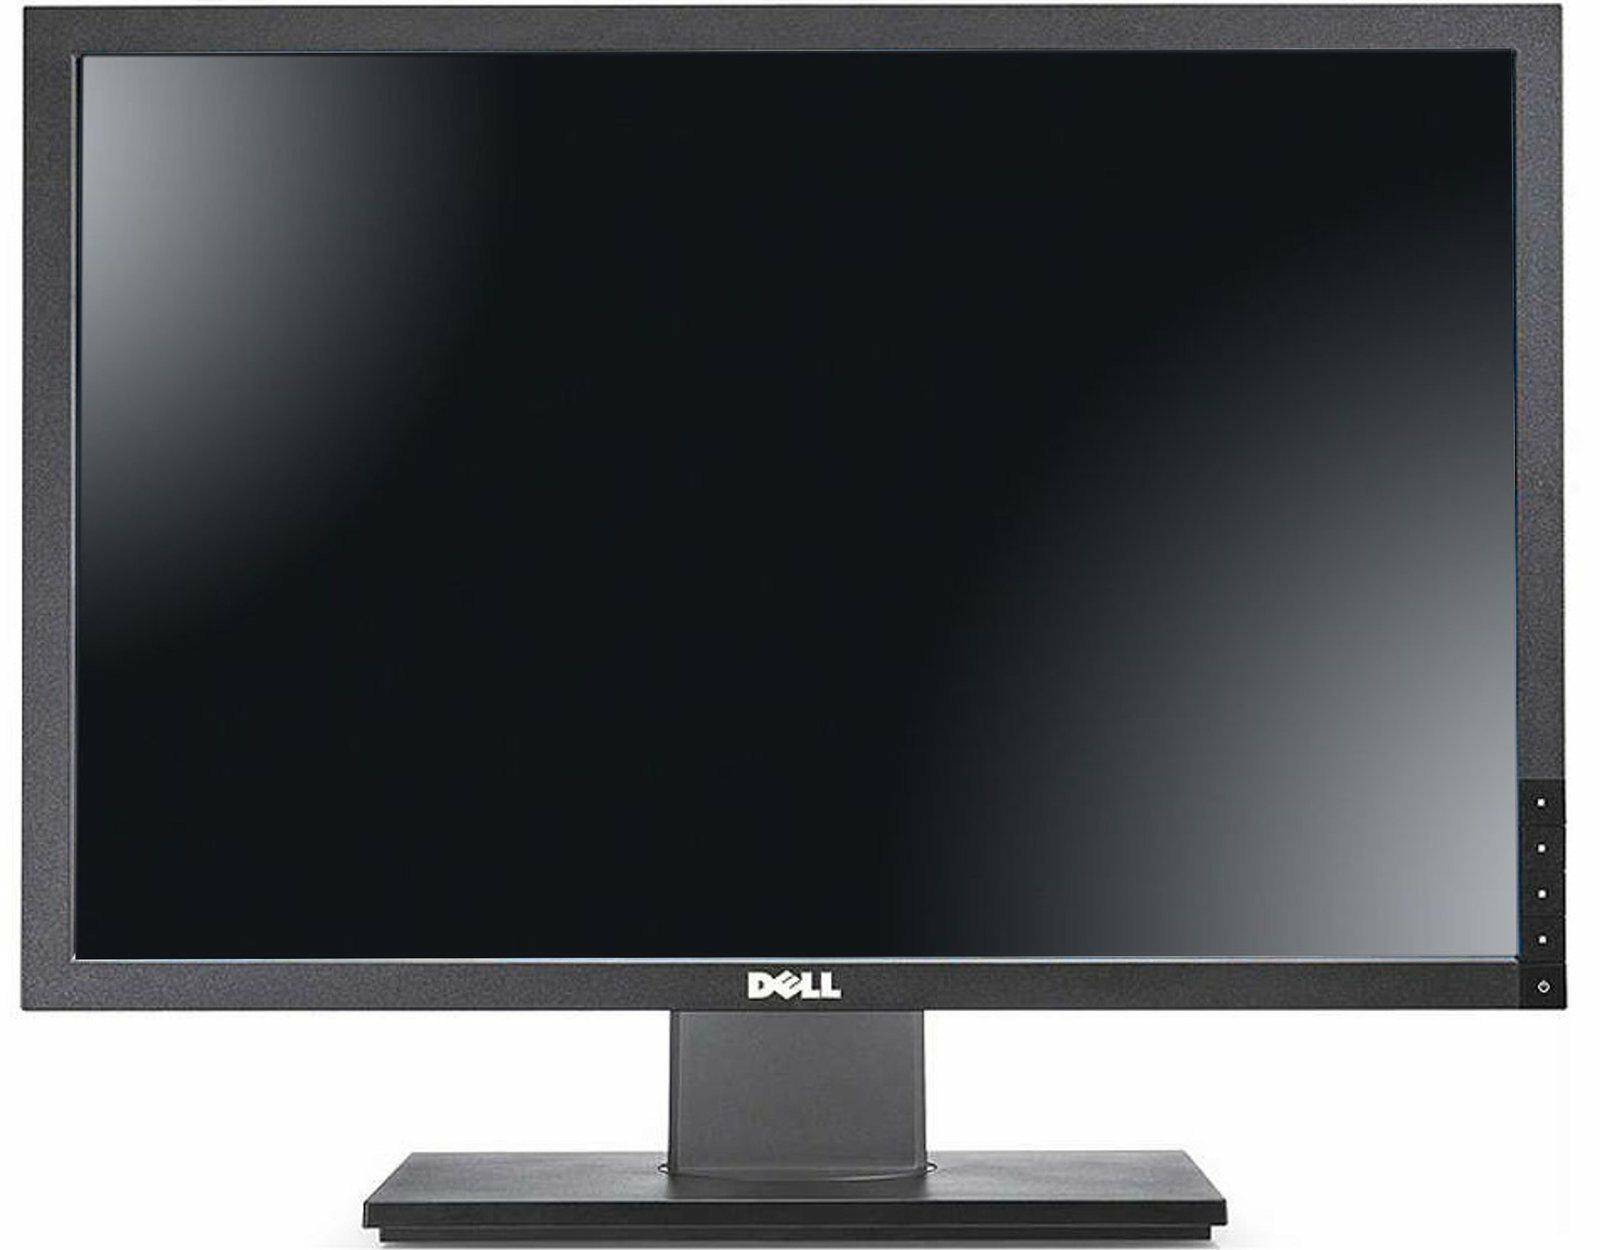 Monitor Dell U2410f (Photo 1)